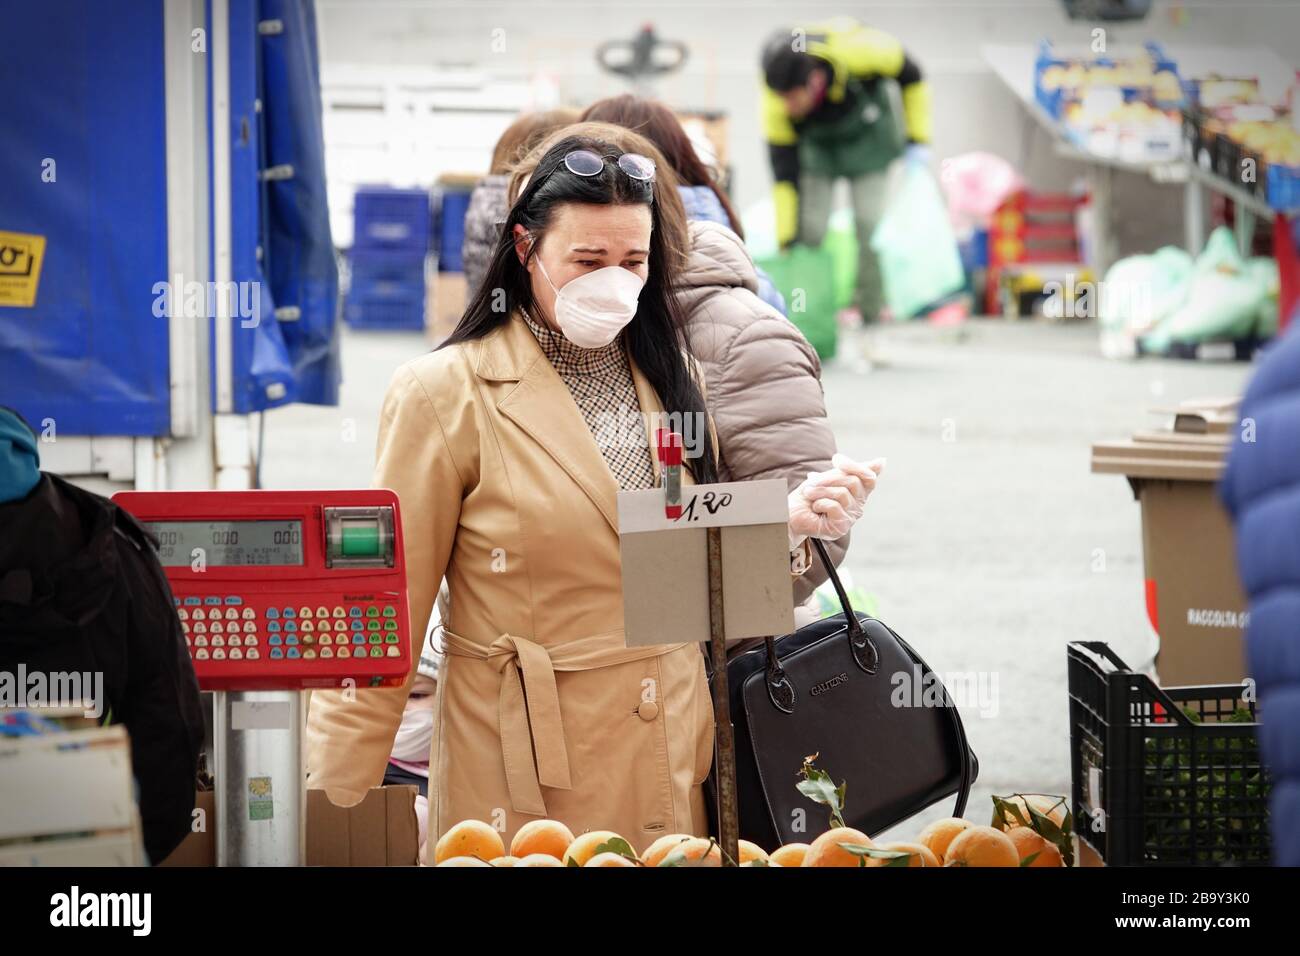 Menschen mit Gesichtsmasken zum Schutz vor COVID-19 kaufen auf dem Markt Gemüse und Obst ein. Turin, Italien - März 2020 Stockfoto